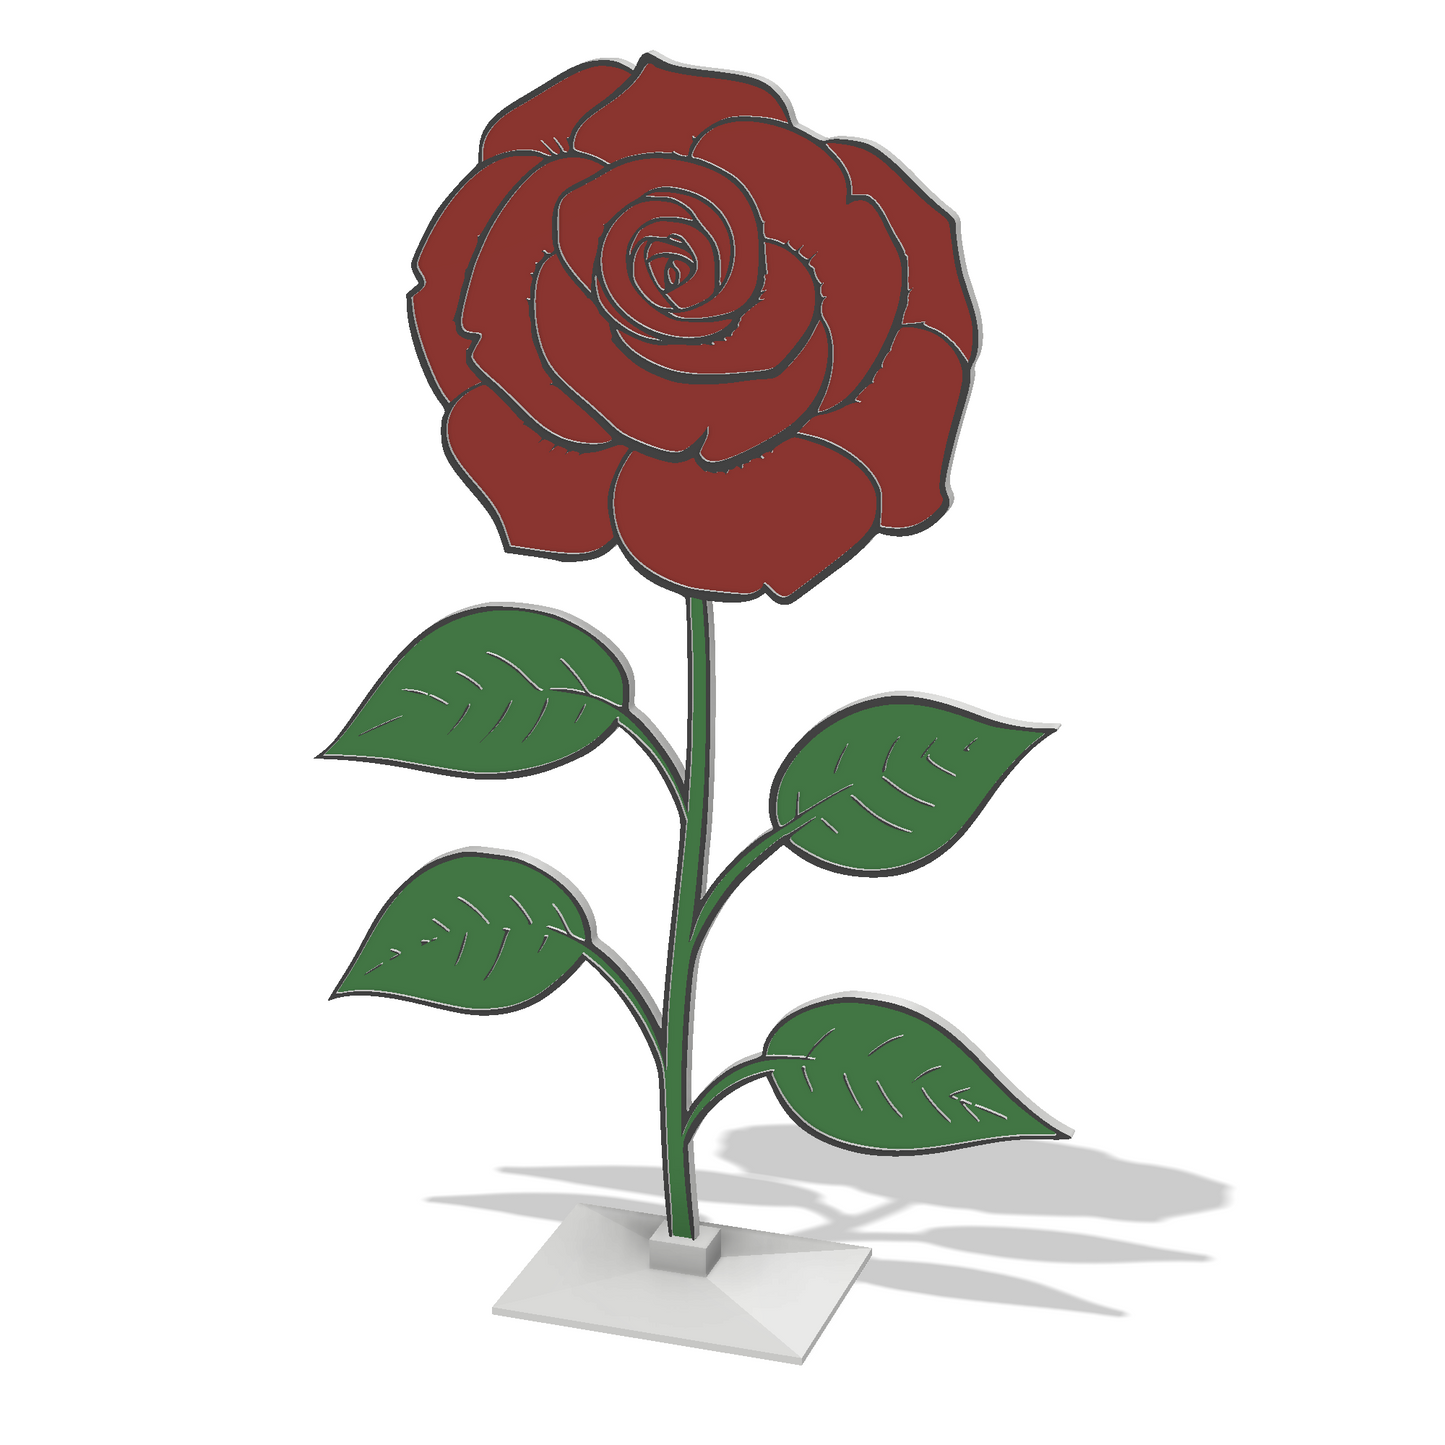 Růže - 3D omalovánky